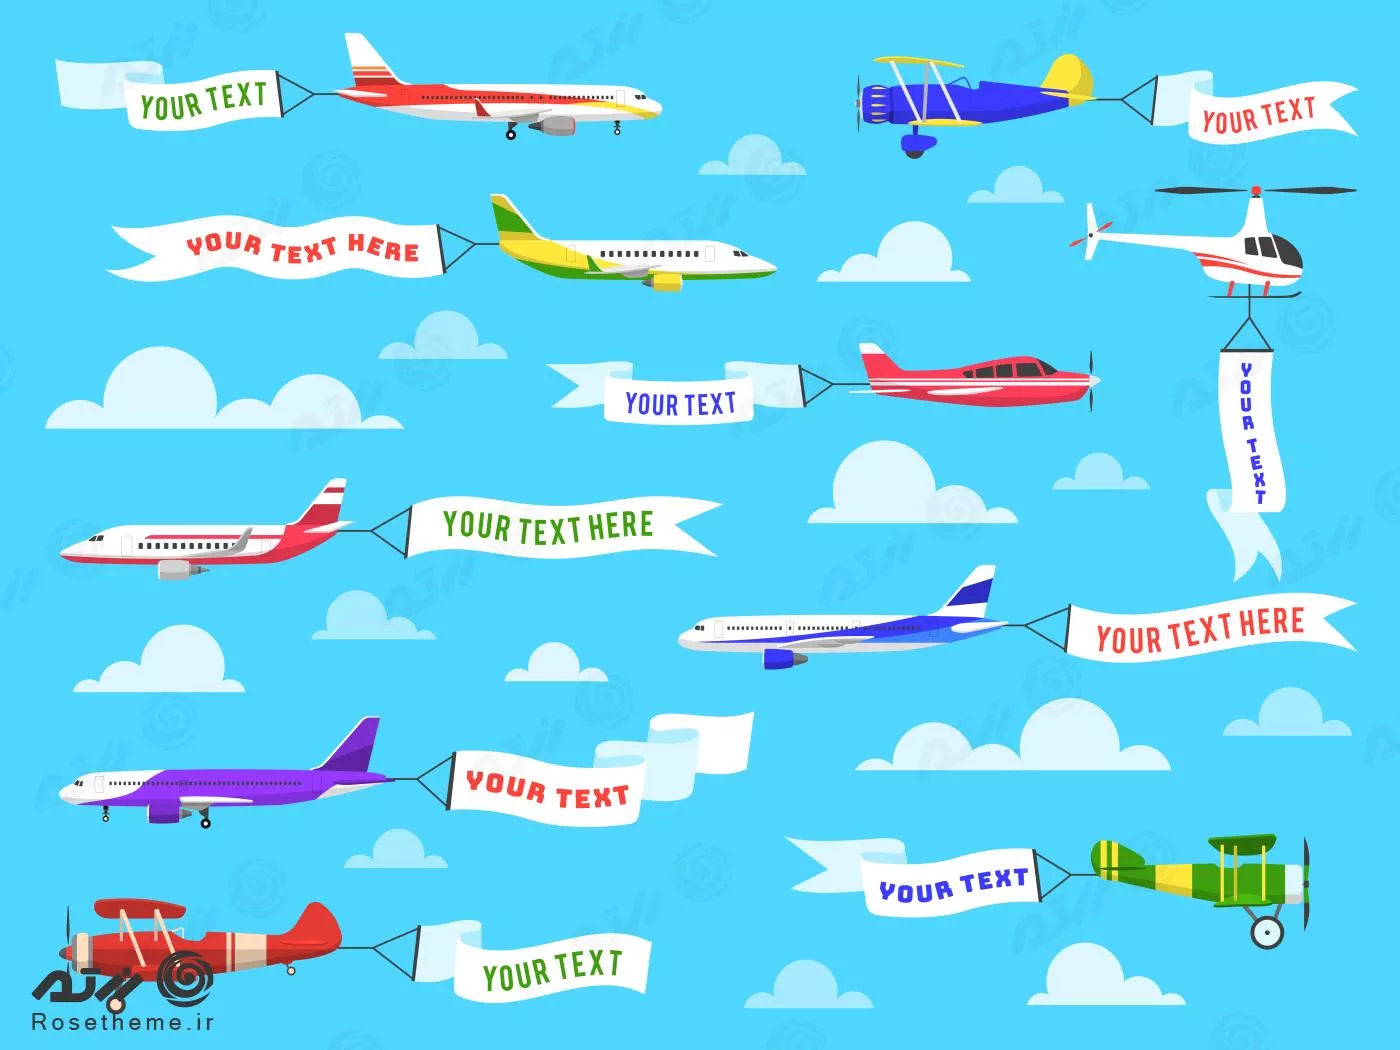 وکتور EPS لایه باز طرح گرافیکی هواپیما با طرح ها و رنگ های مختلف 21986